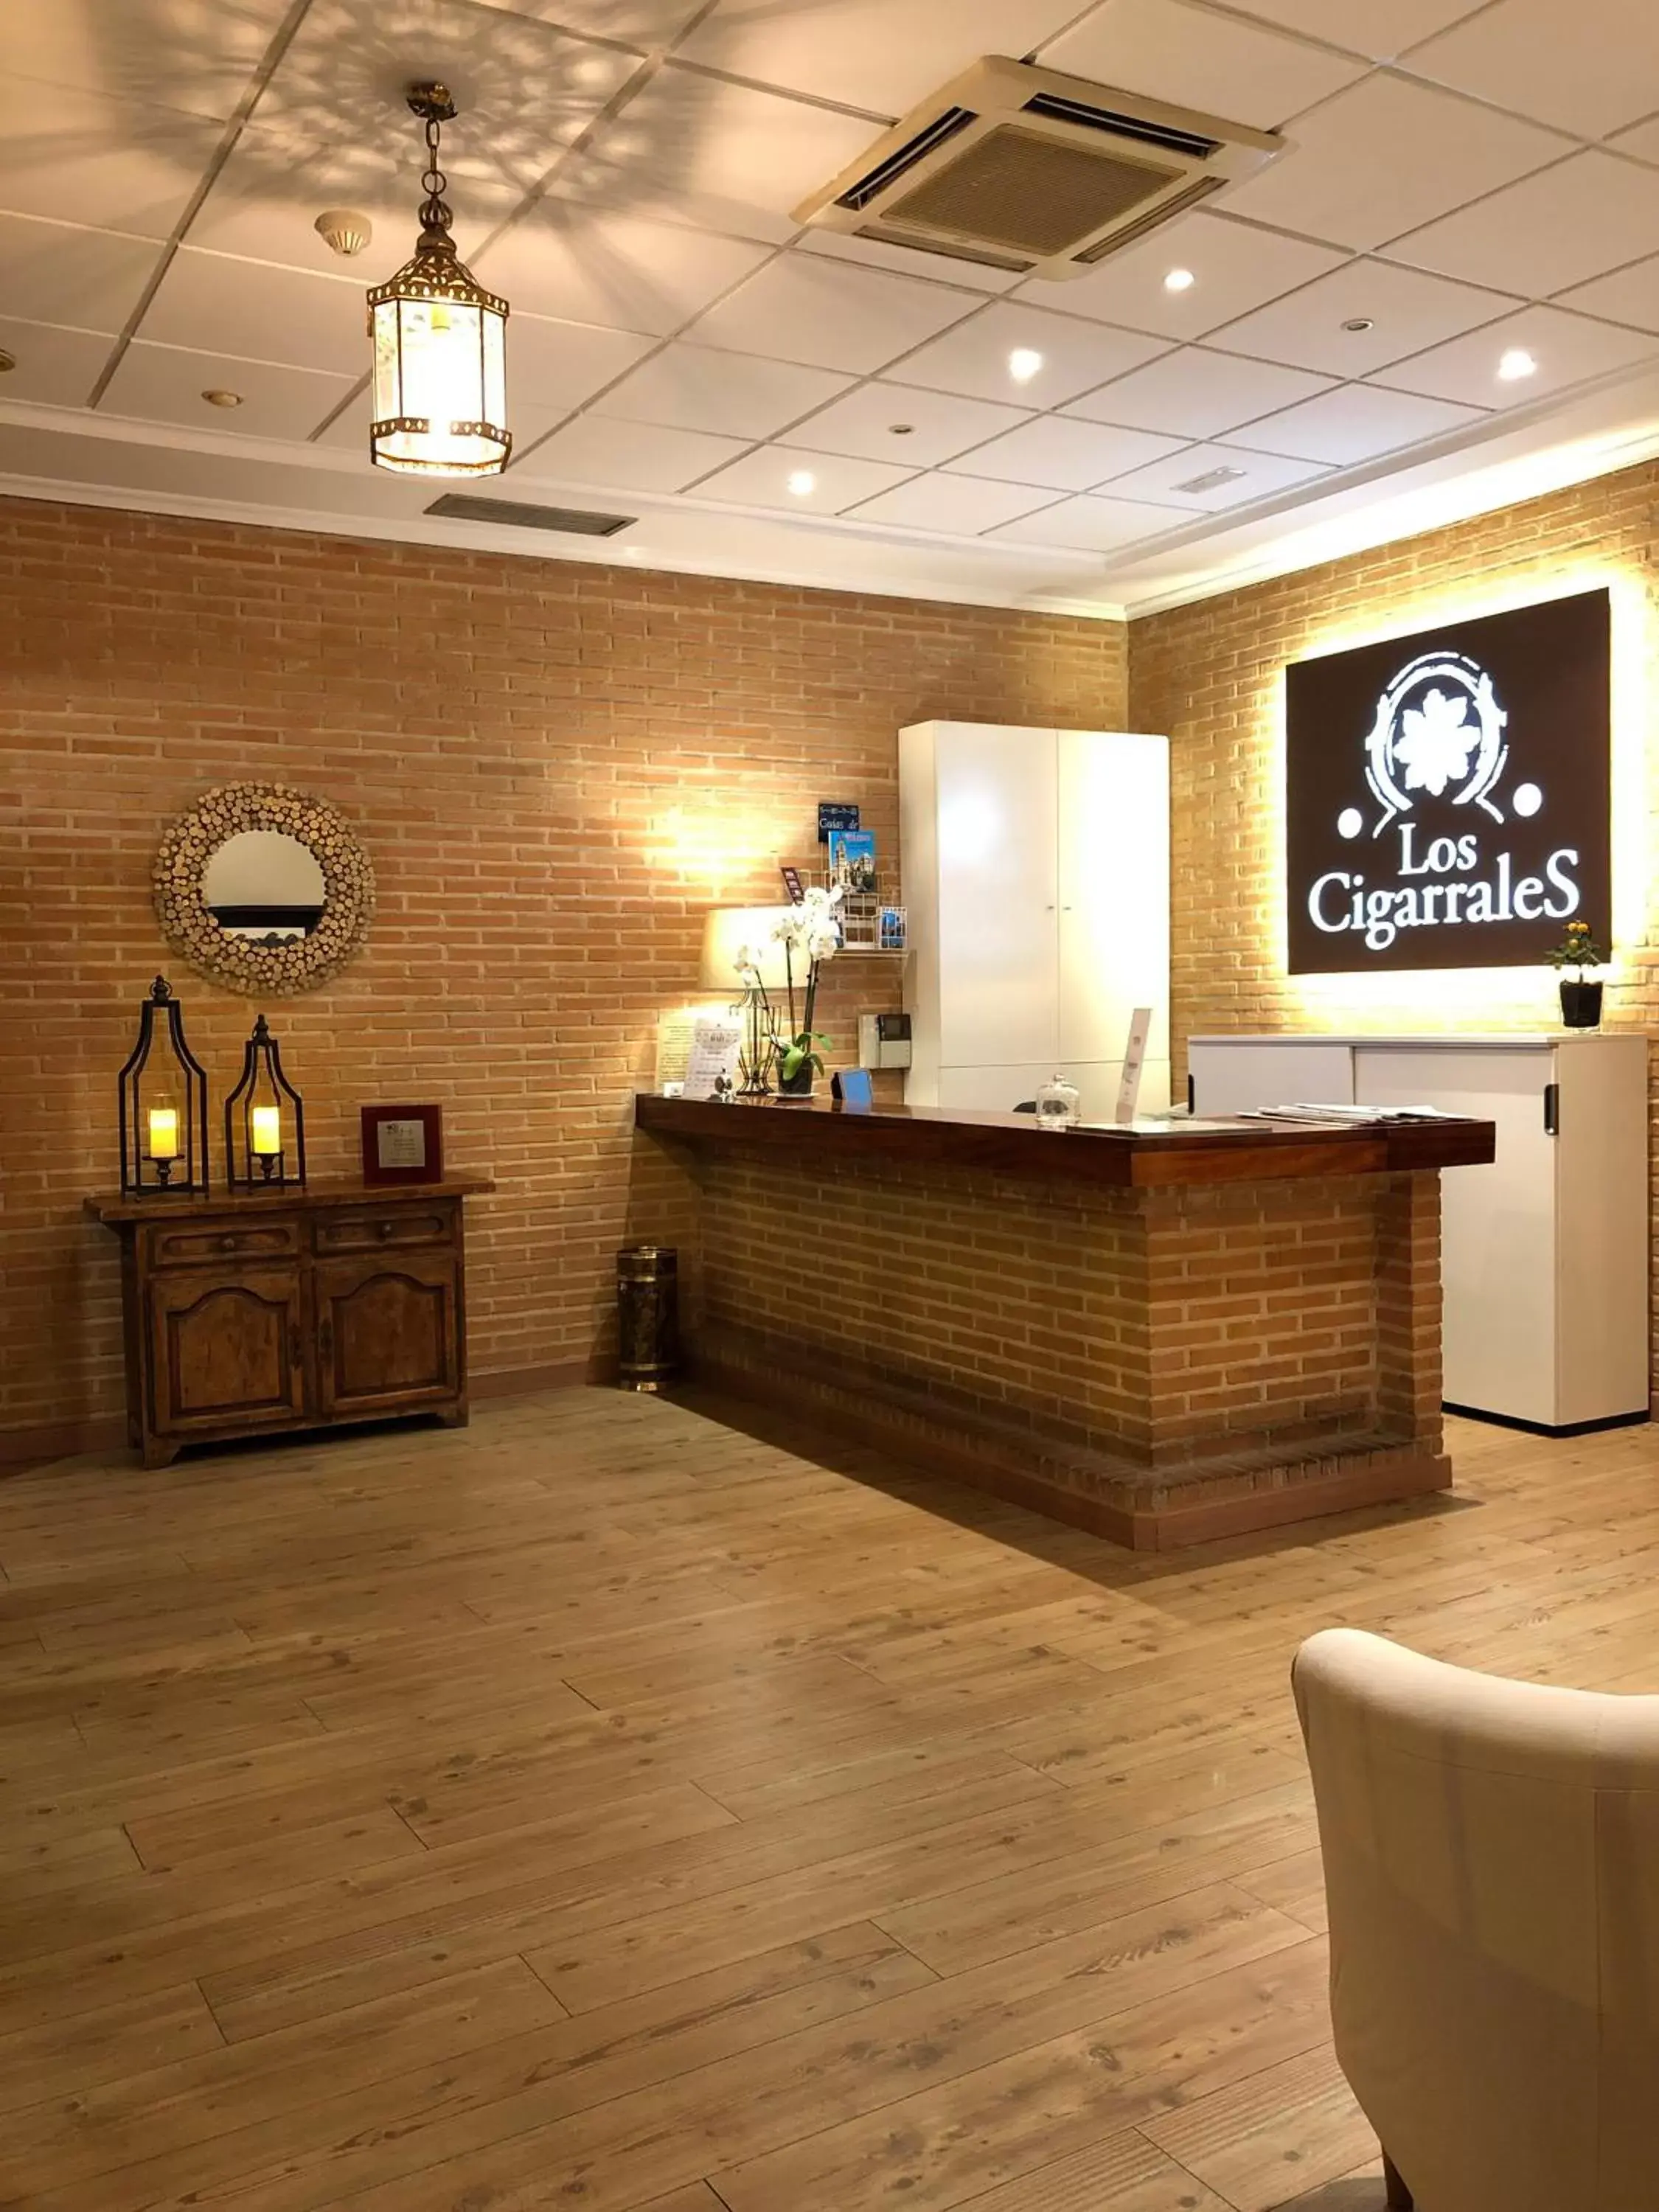 Lobby or reception in Hotel Los Cigarrales